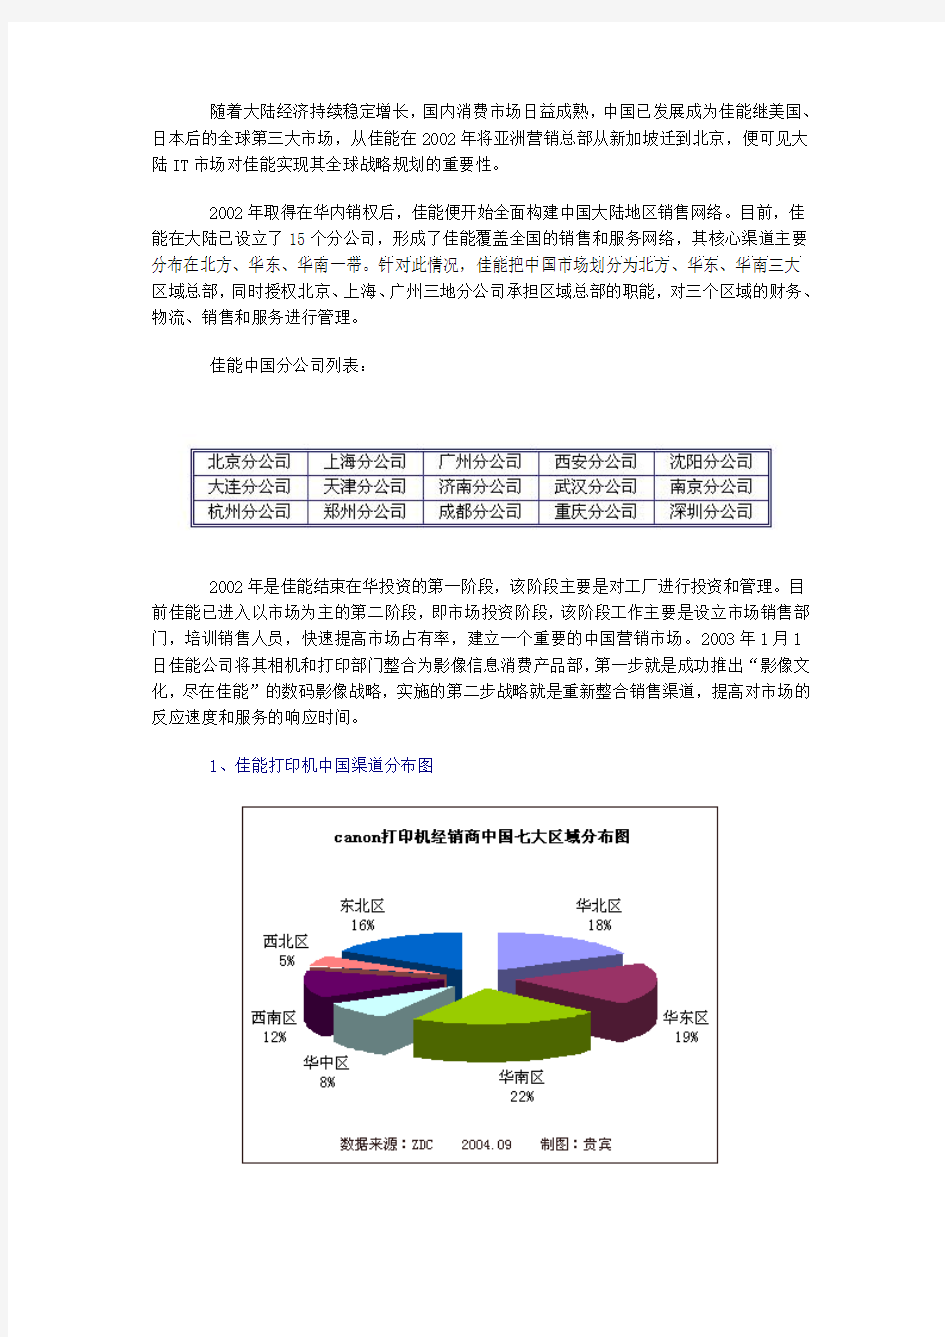 佳能打印机中国市场销售渠道分析报告